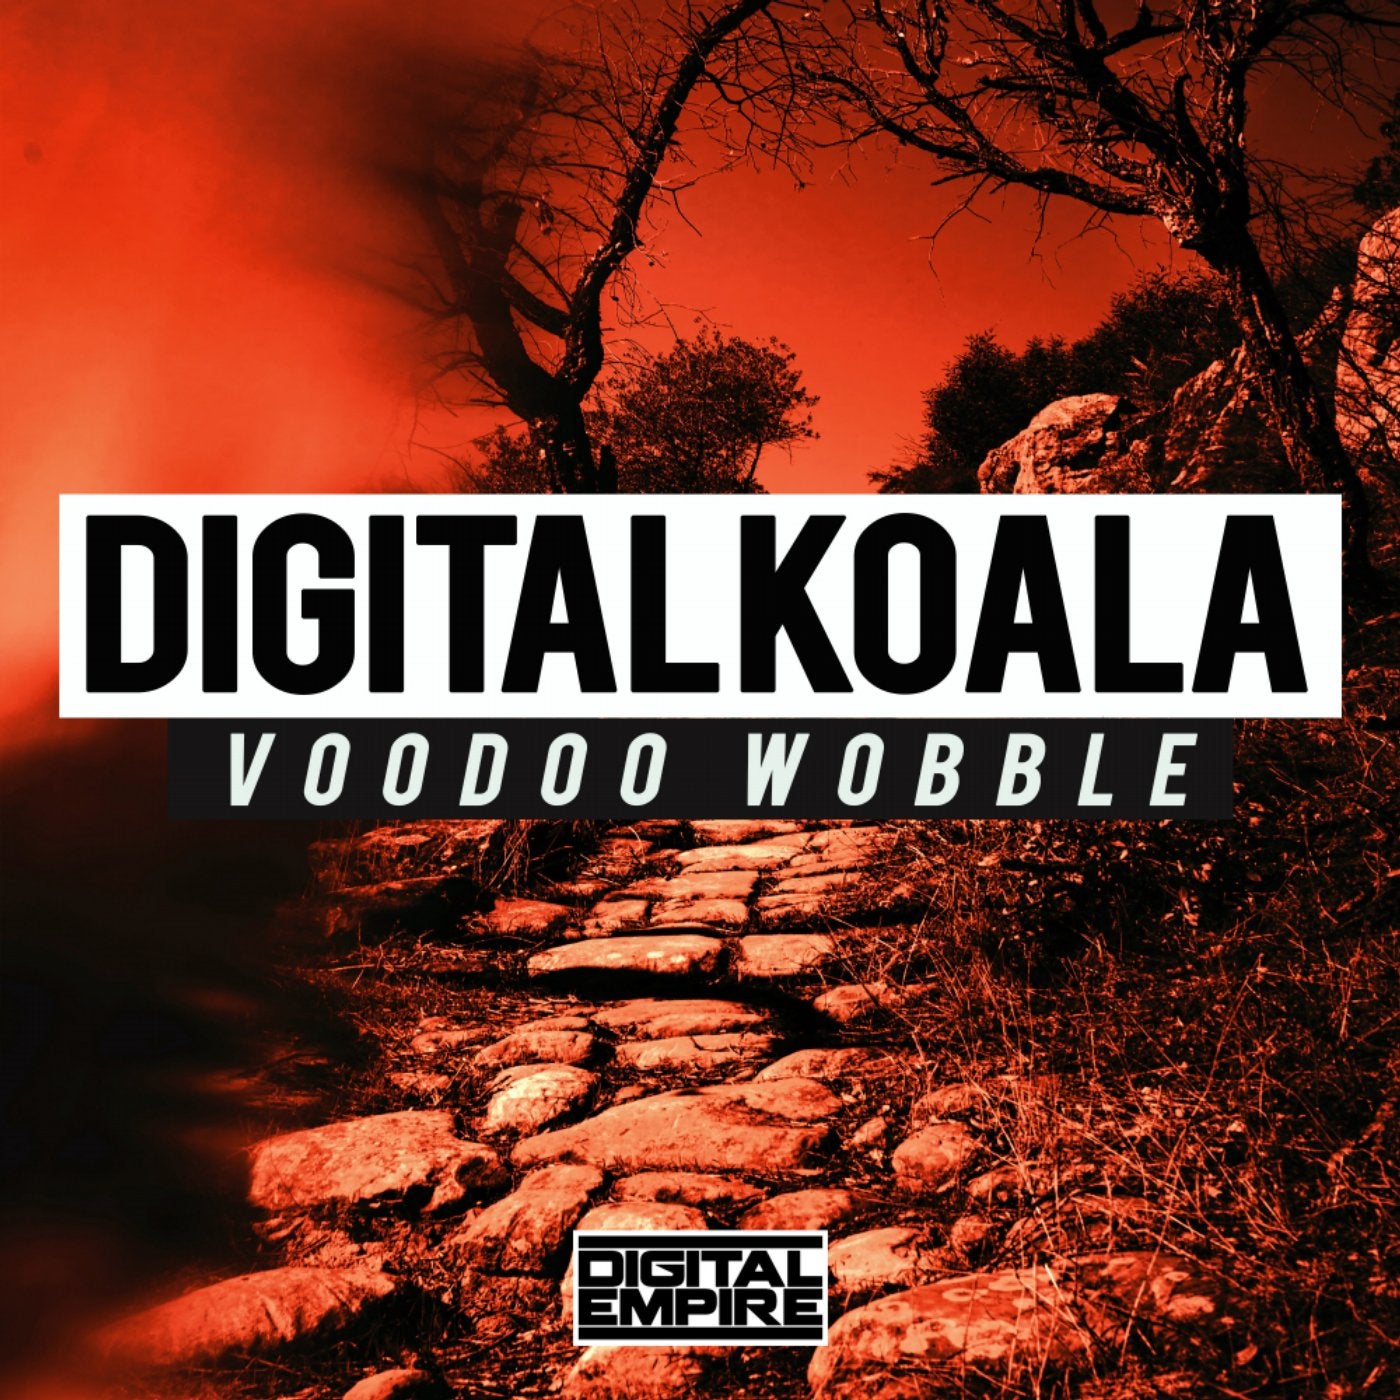 Voodoo Wobble